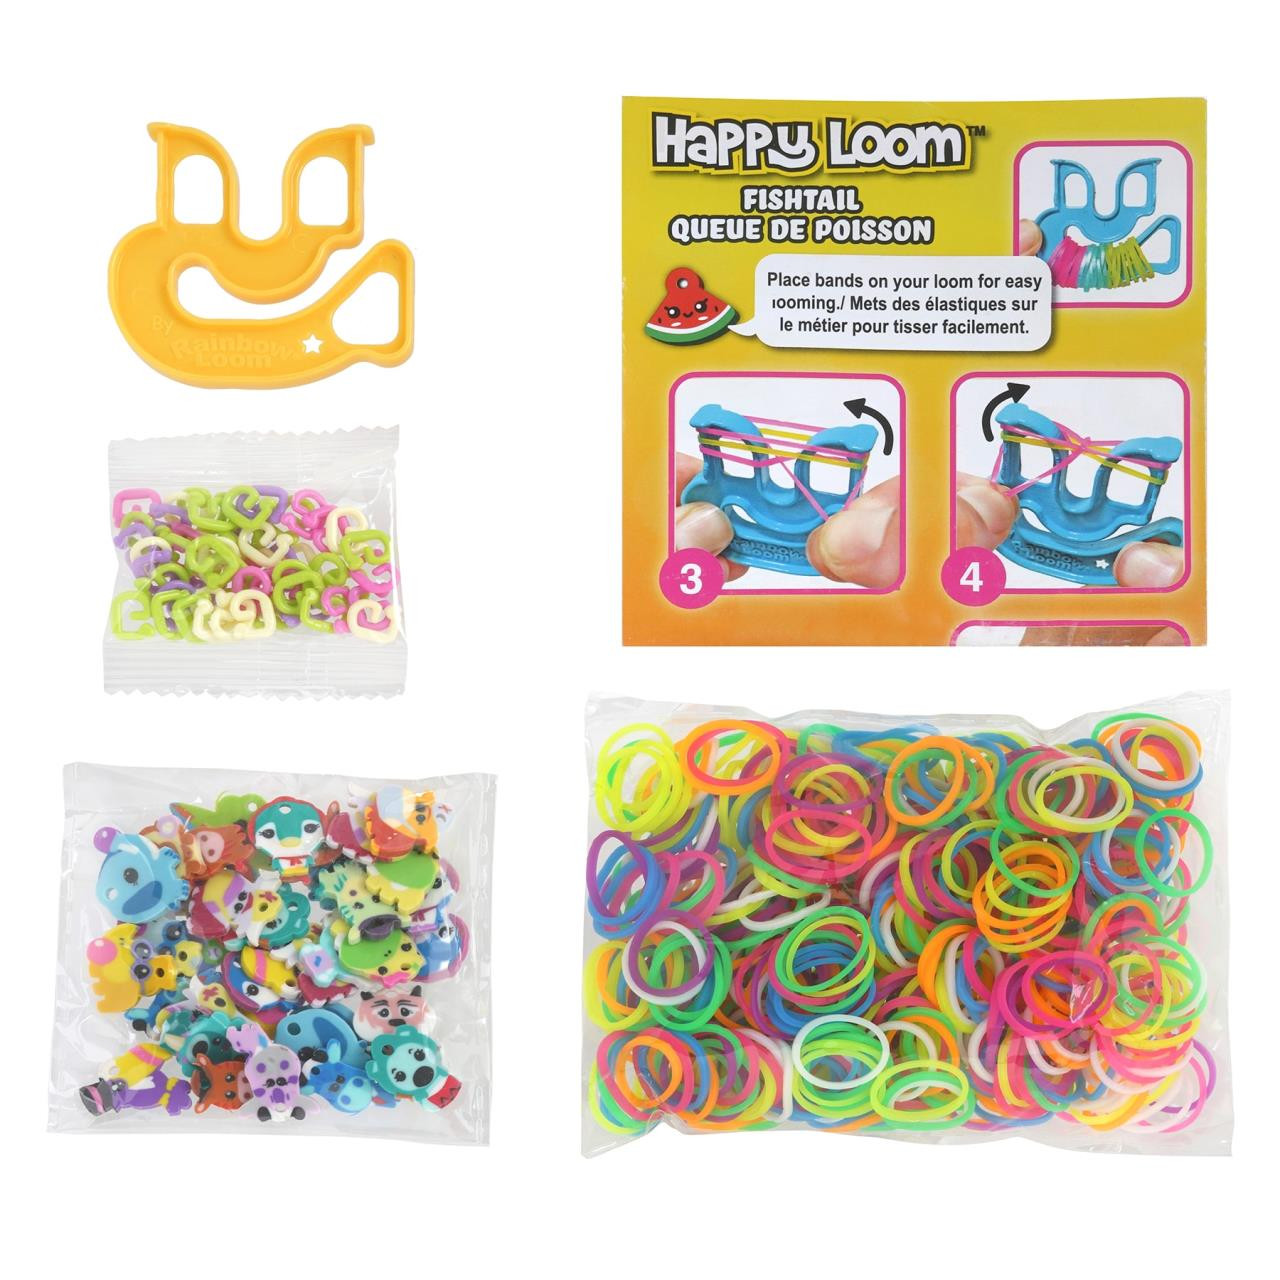 Rainbow Loom Loomi-Pals Food Charm Bracelet Kit